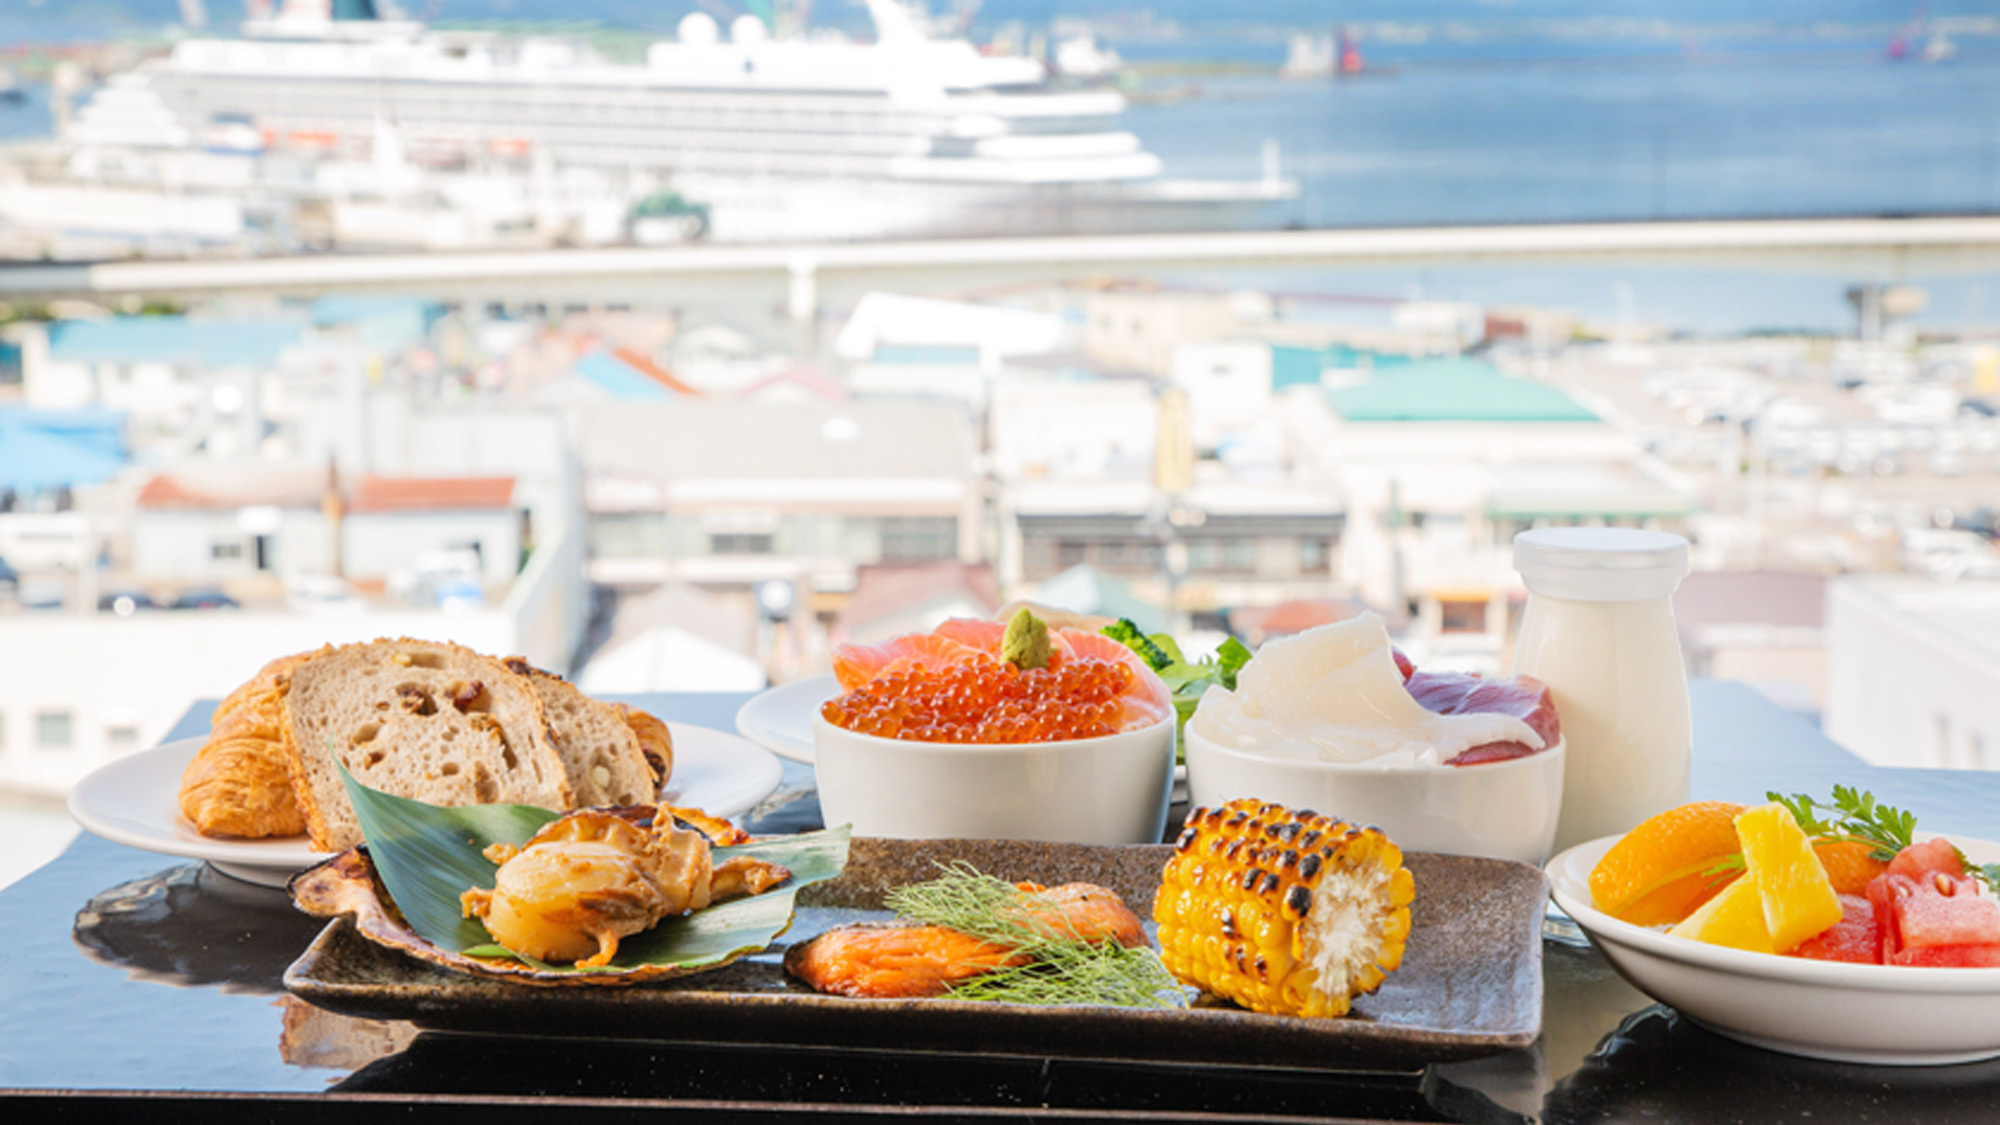 炭火焼や手作り海鮮丼など北海道の食材にこだわった自慢の朝食をお楽しみください